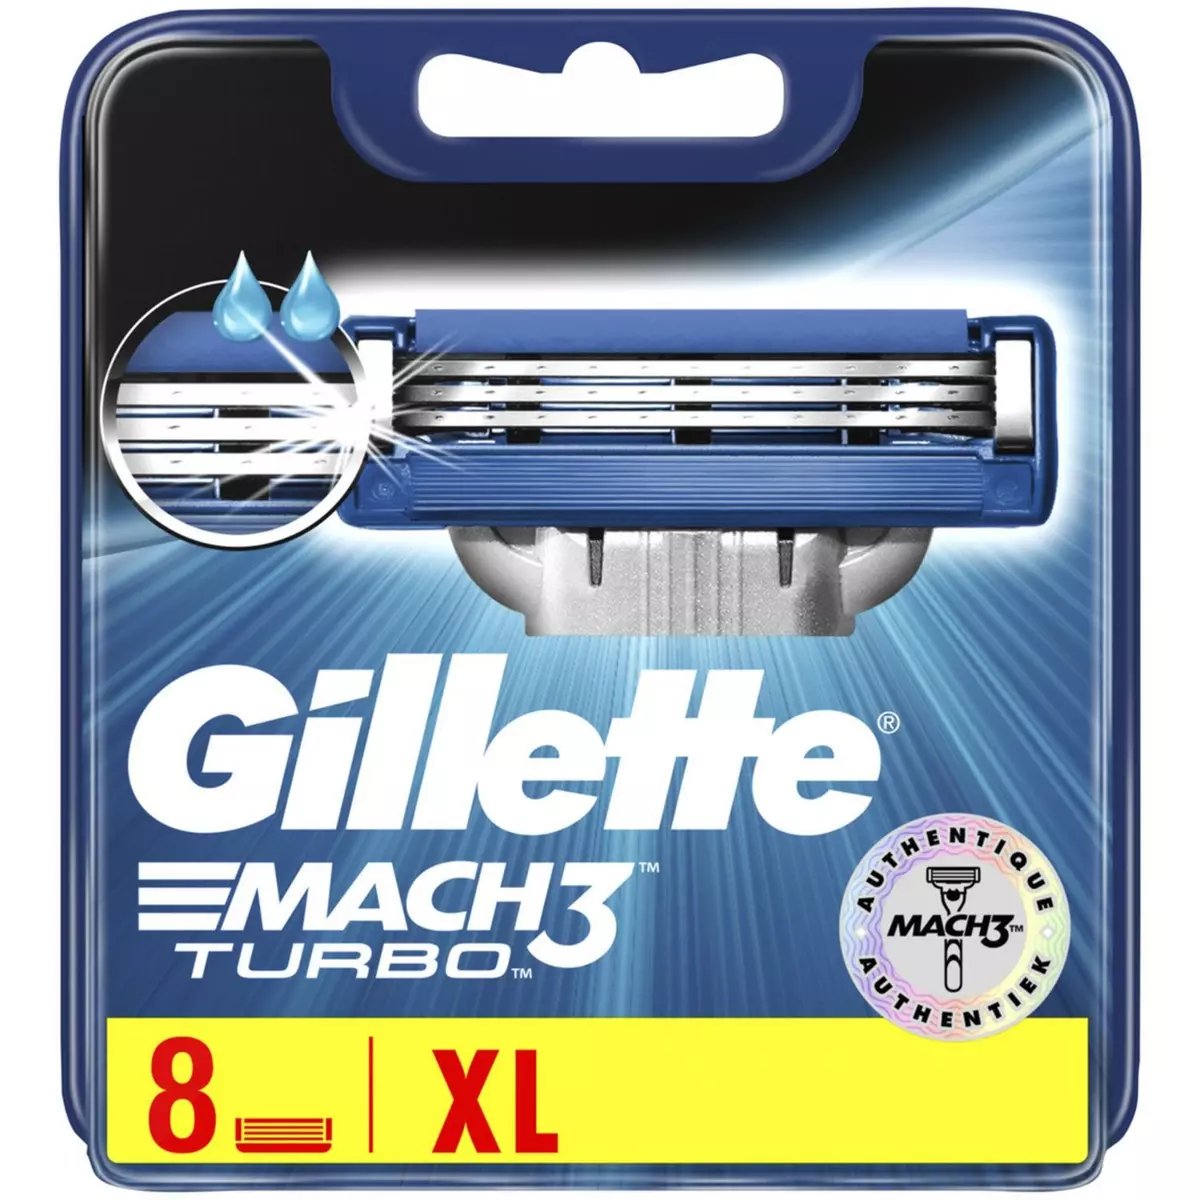 GILLETTE Mach3 Turbo recharge lames de rasoir 8 recharges